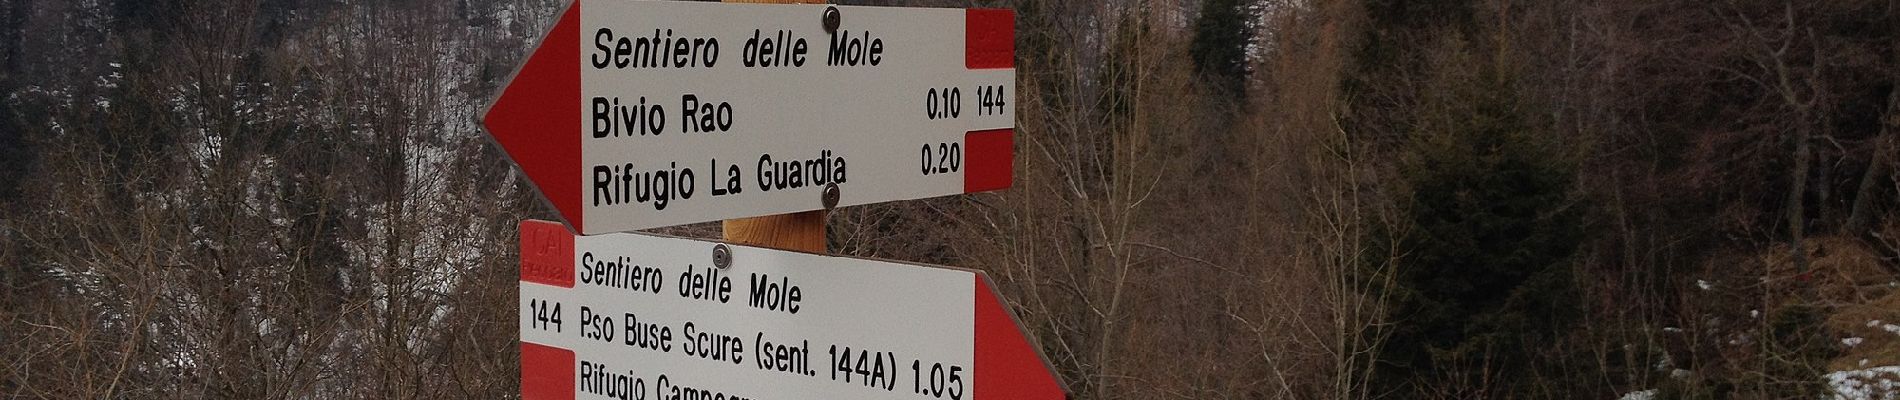 Tour Zu Fuß Recoaro Terme - Sentiero delle Mole - Photo